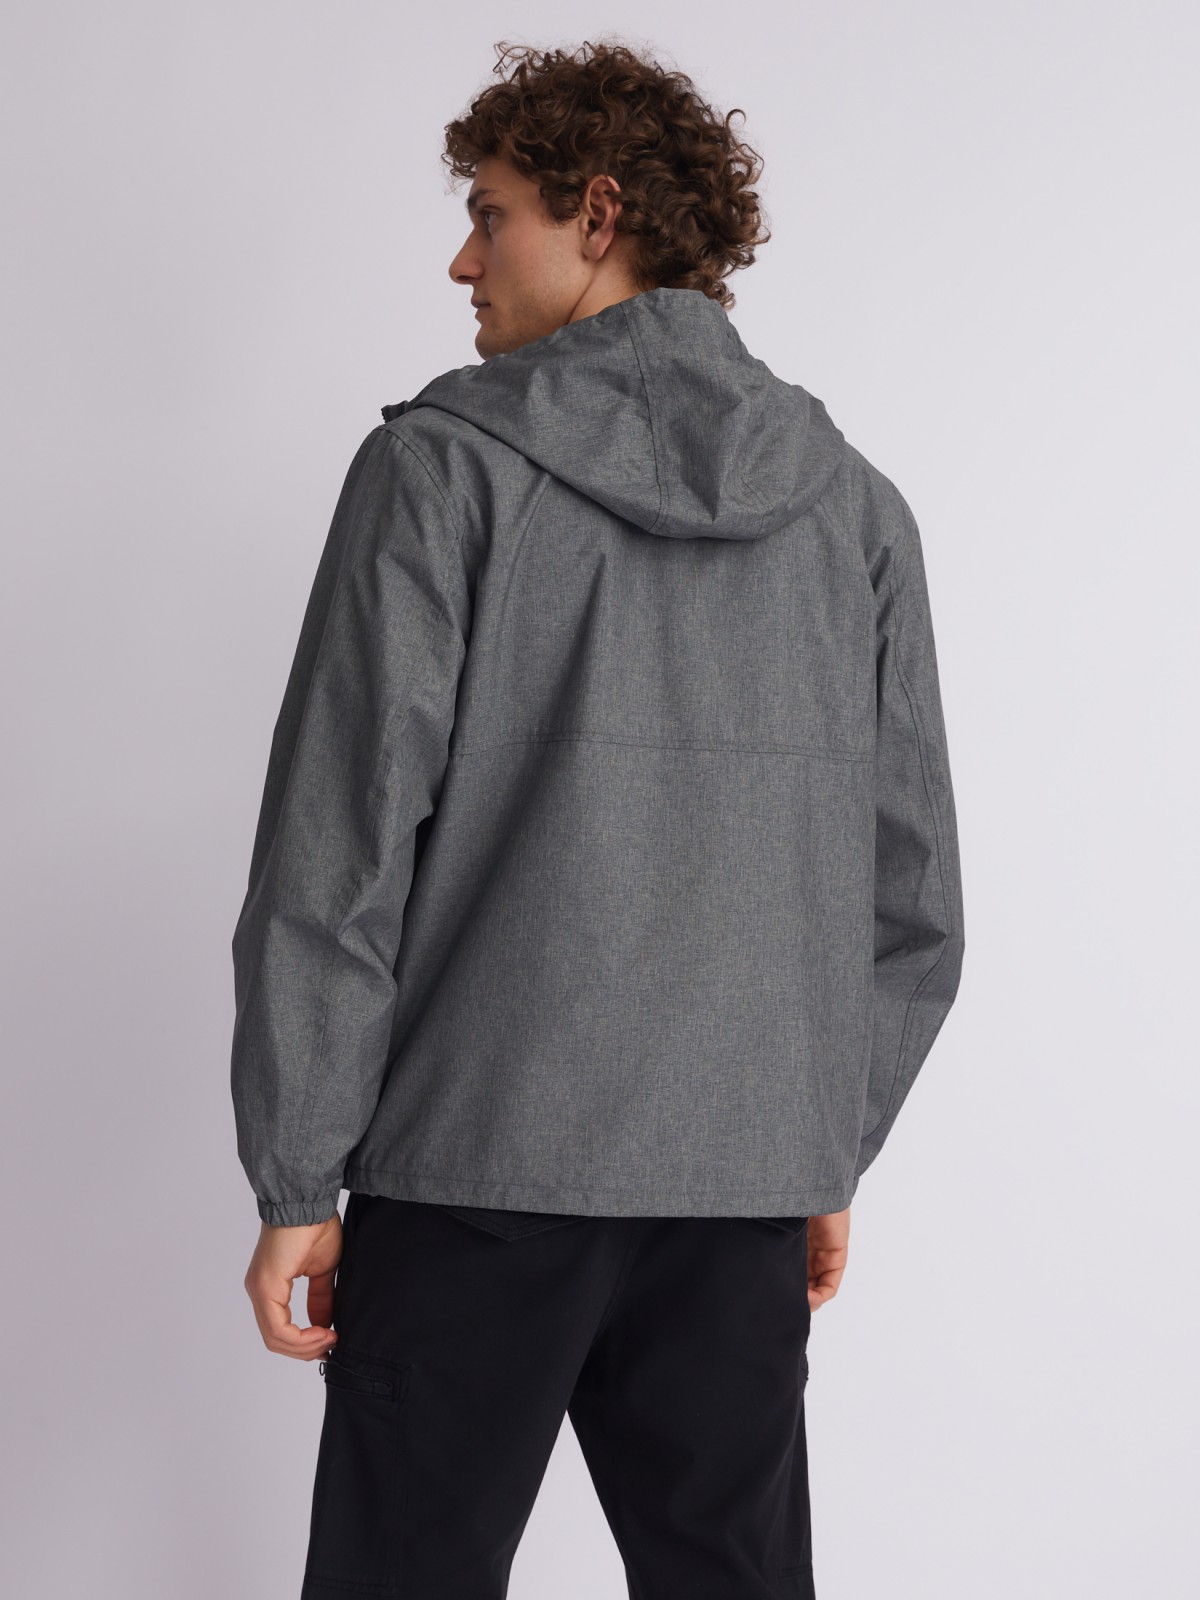 Куртка-ветровка с капюшоном zolla 013215602024, цвет серый, размер M - фото 4